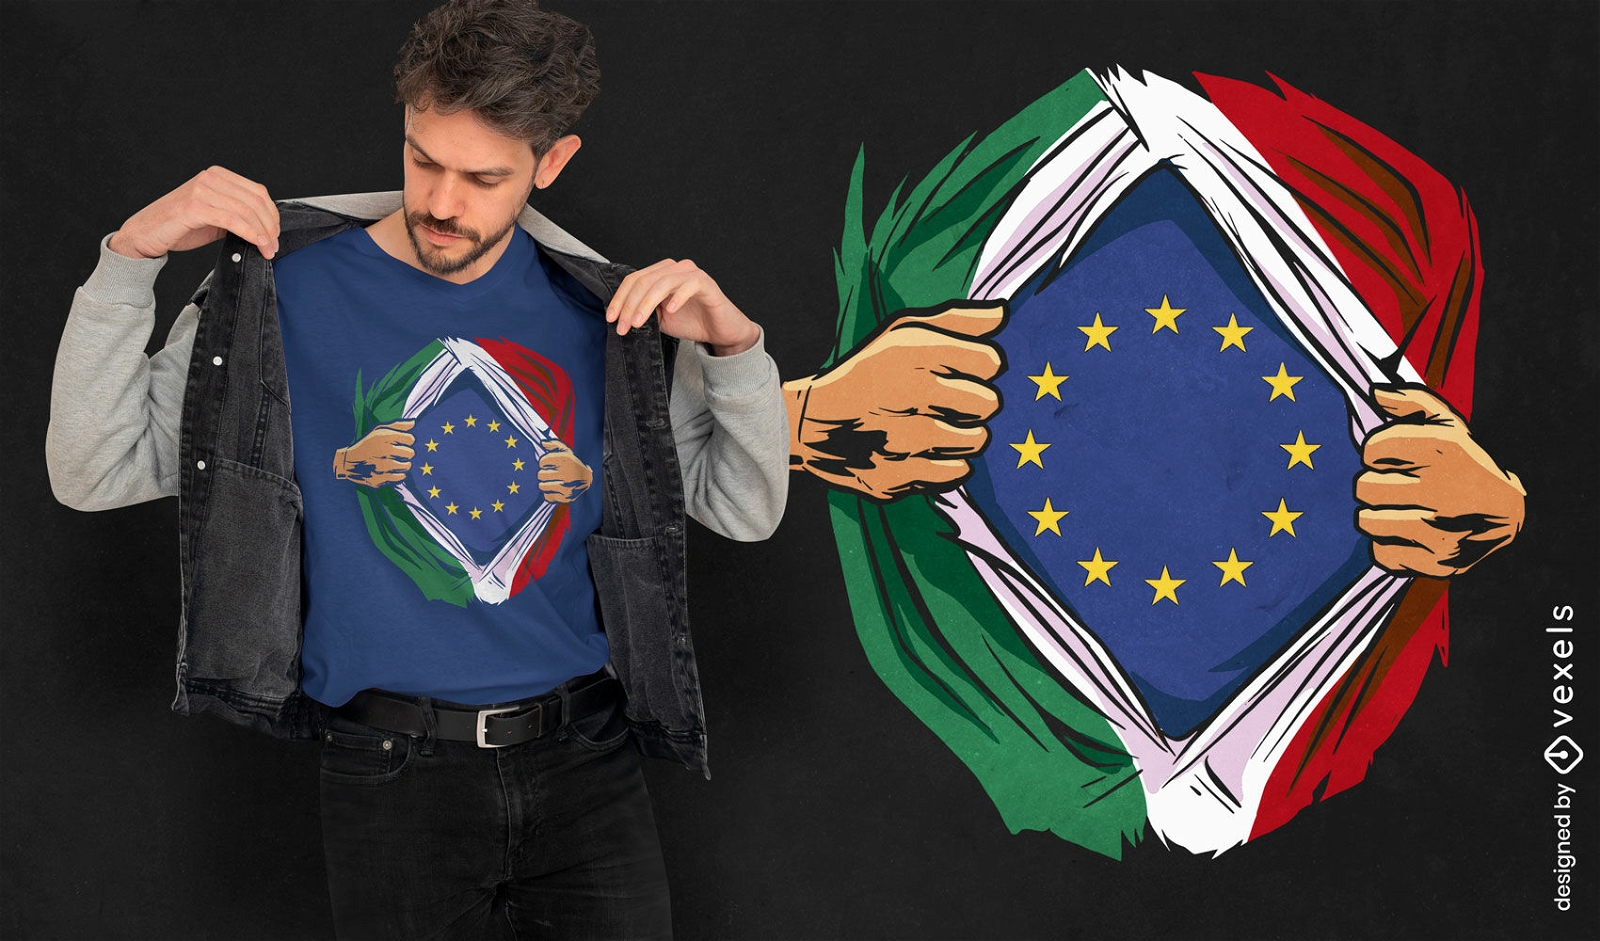 Dise?o de camiseta con banderas italianas y europeas.